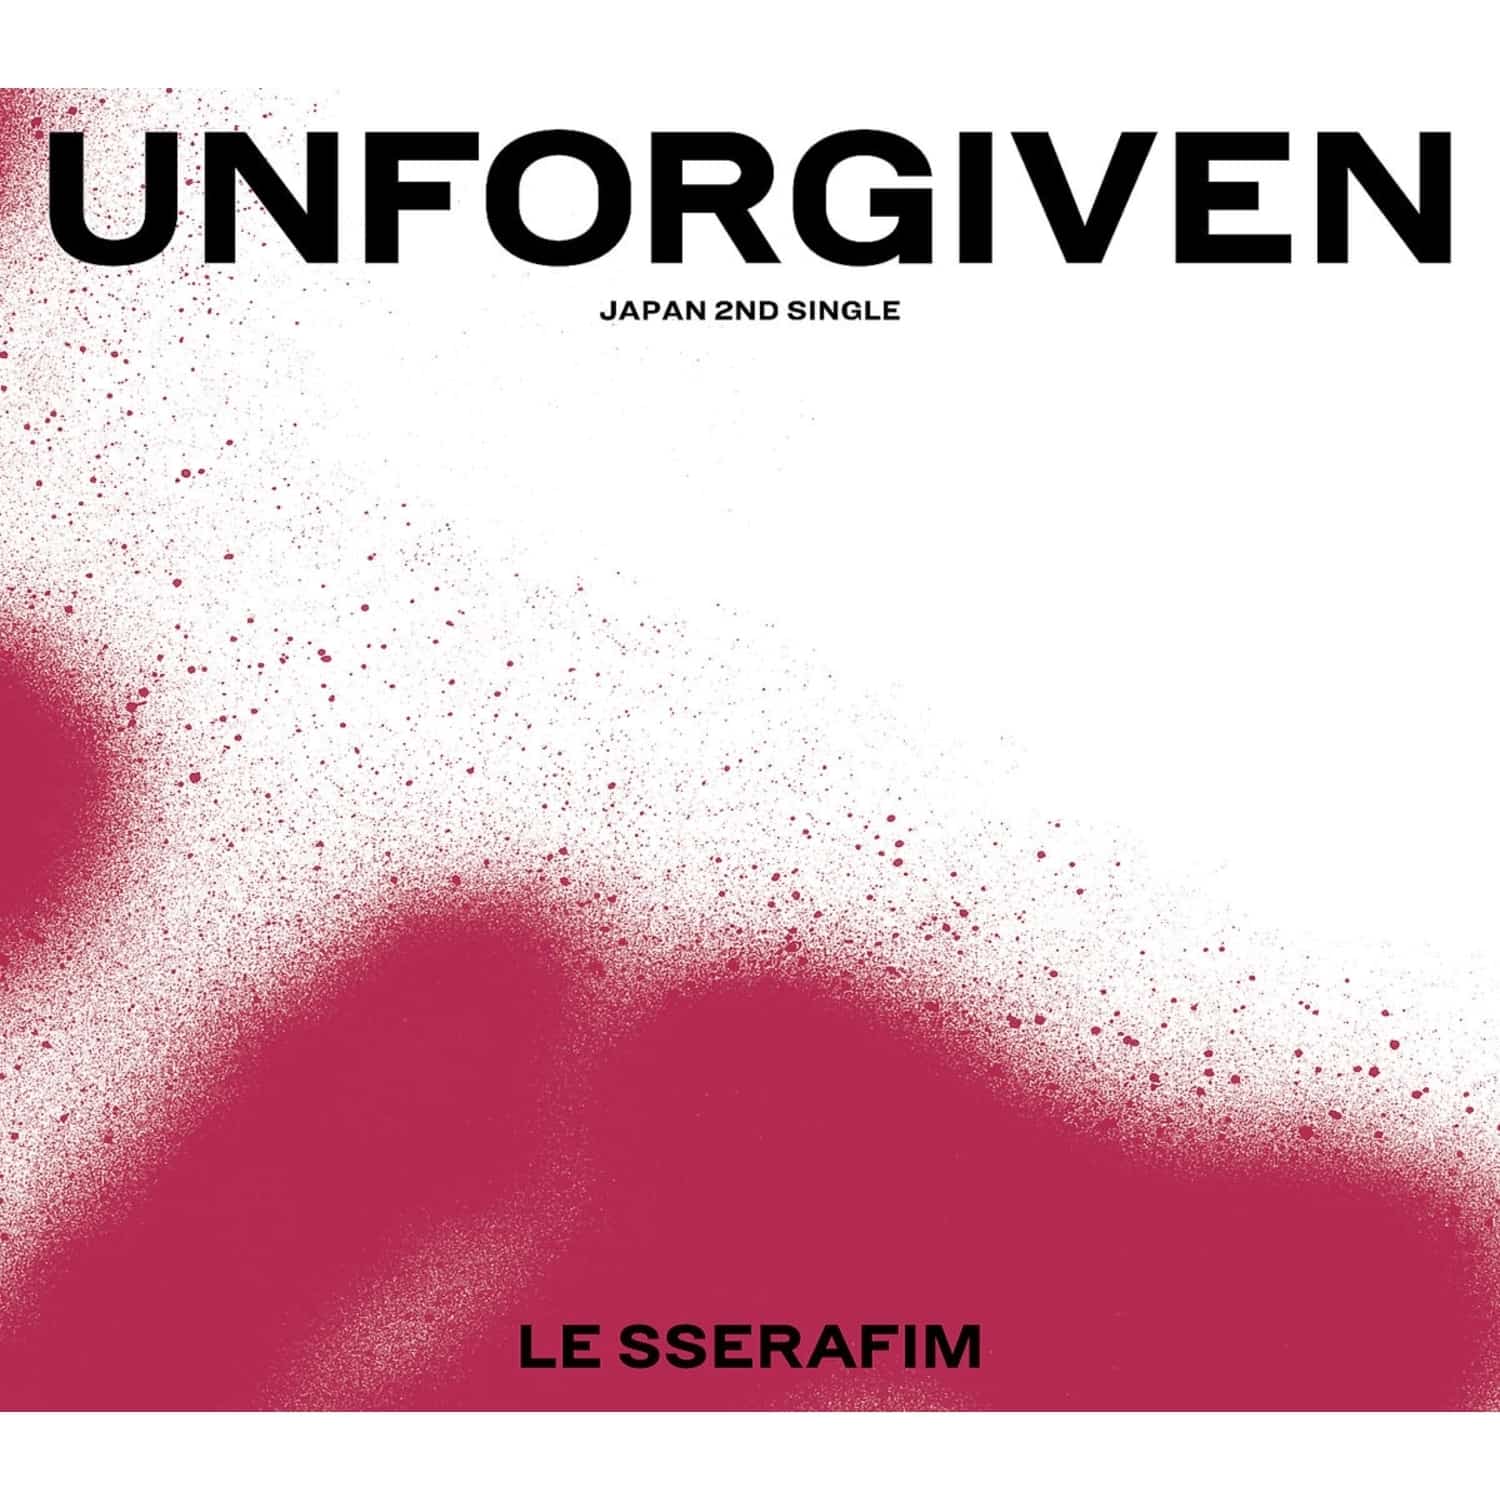 Le Sserafim - UNFORGIVEN STANDARD EDITION 